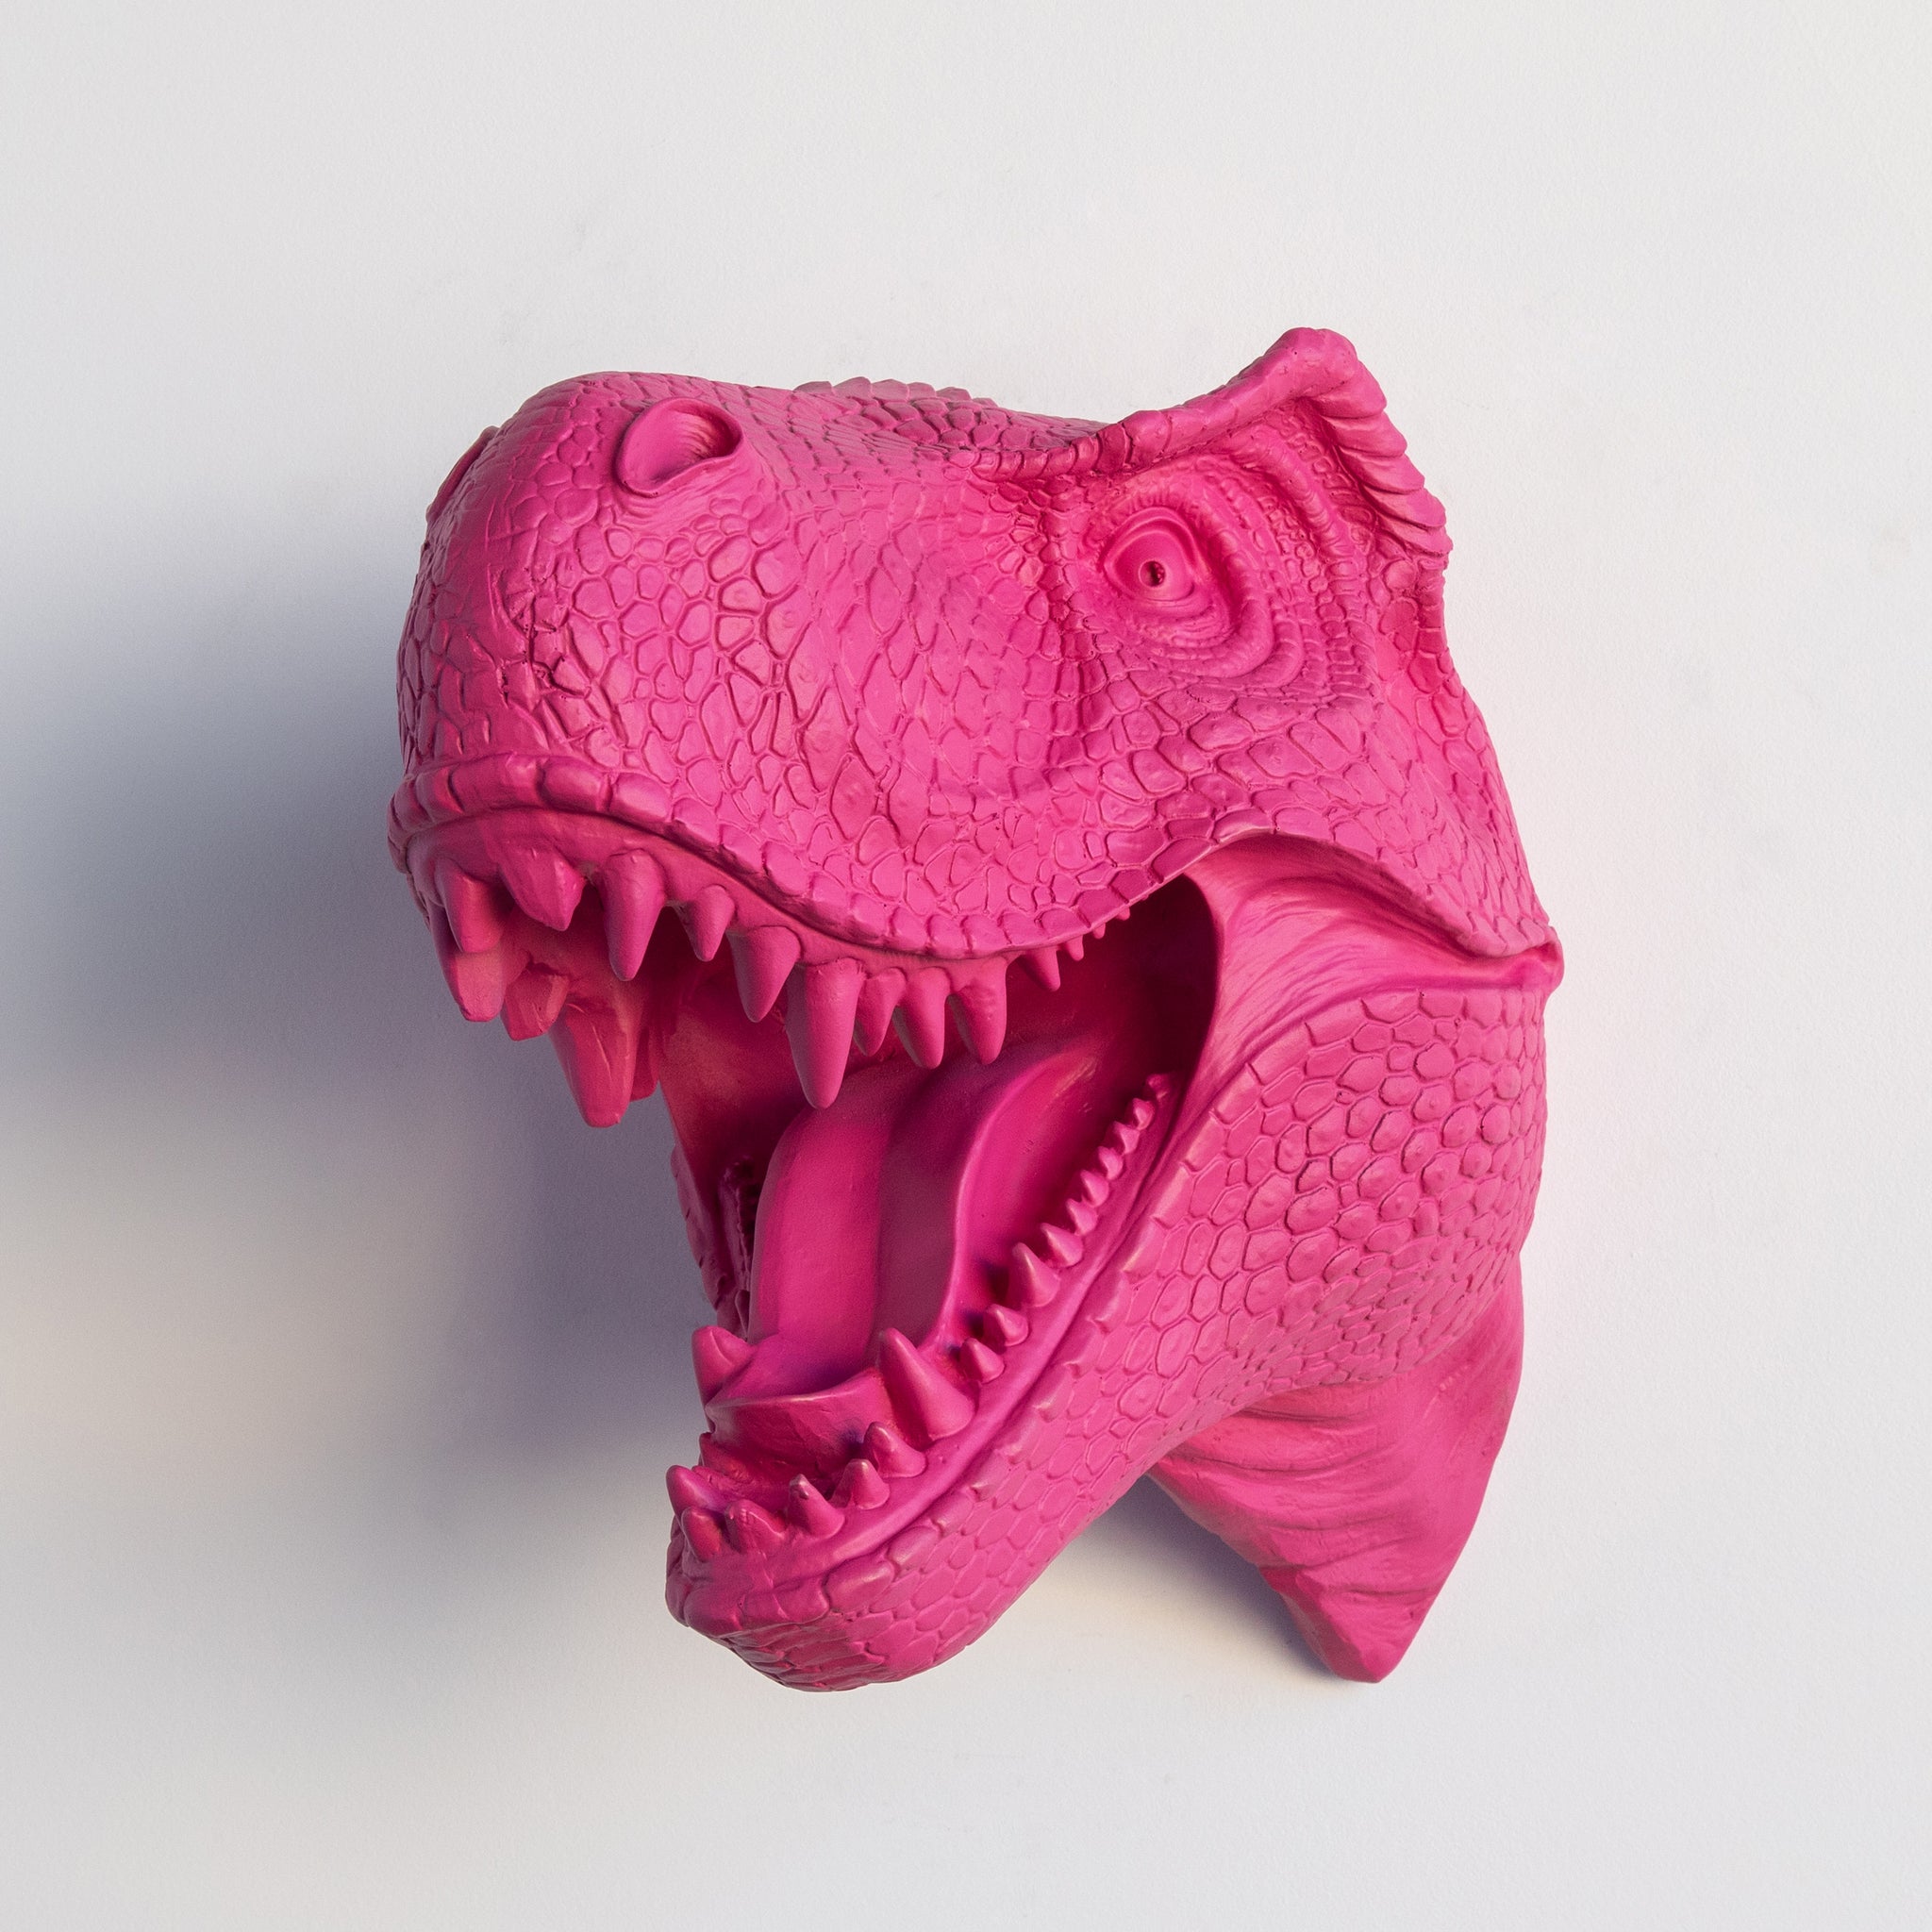 T-Rex Dinosaur Head Wall Mount // Hot Pink